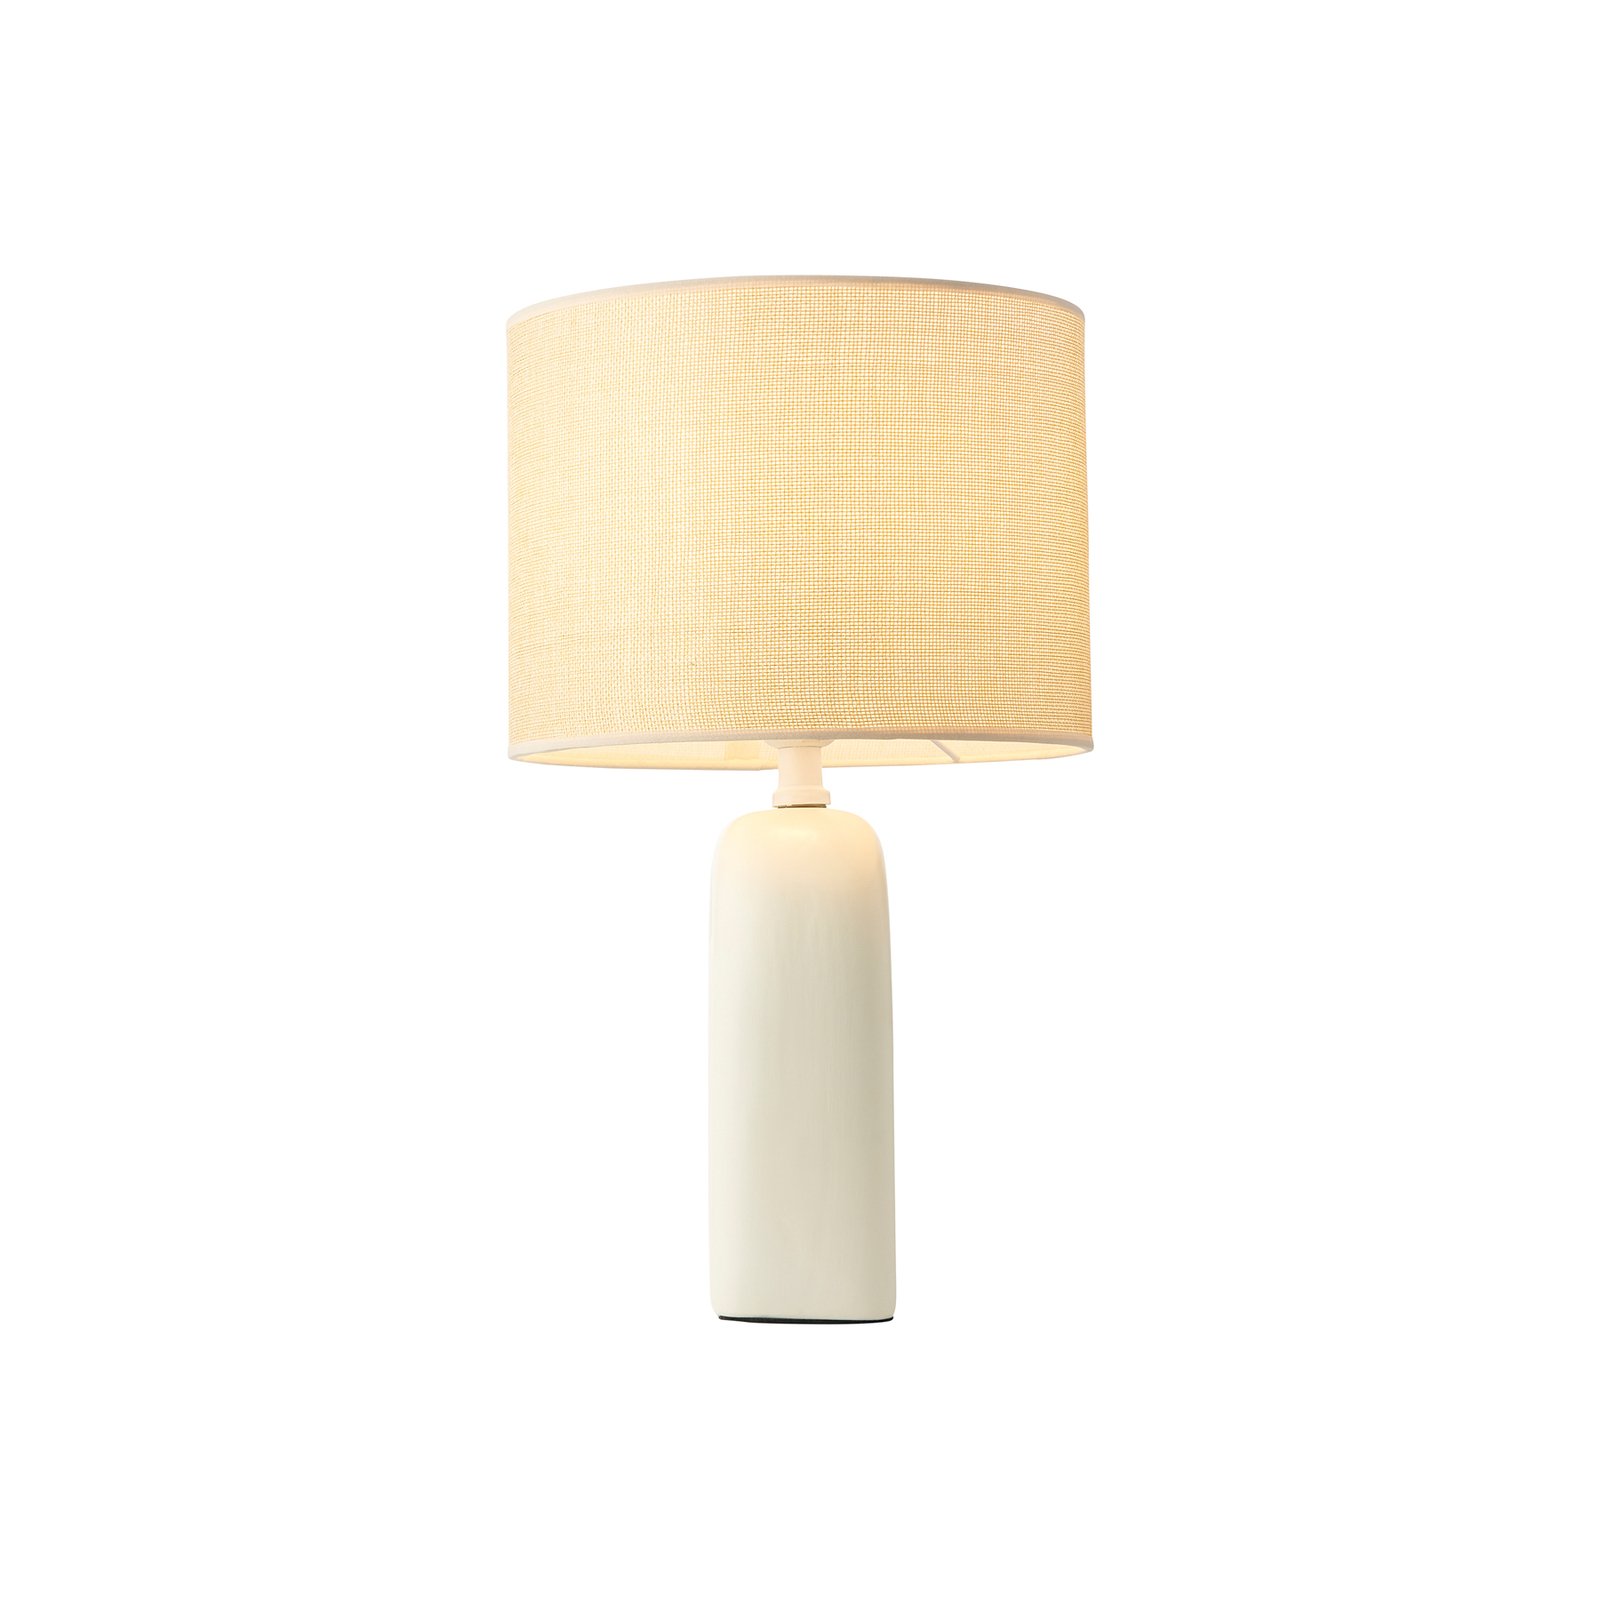 Haze table lamp, ceramic, textile lampshade, beige